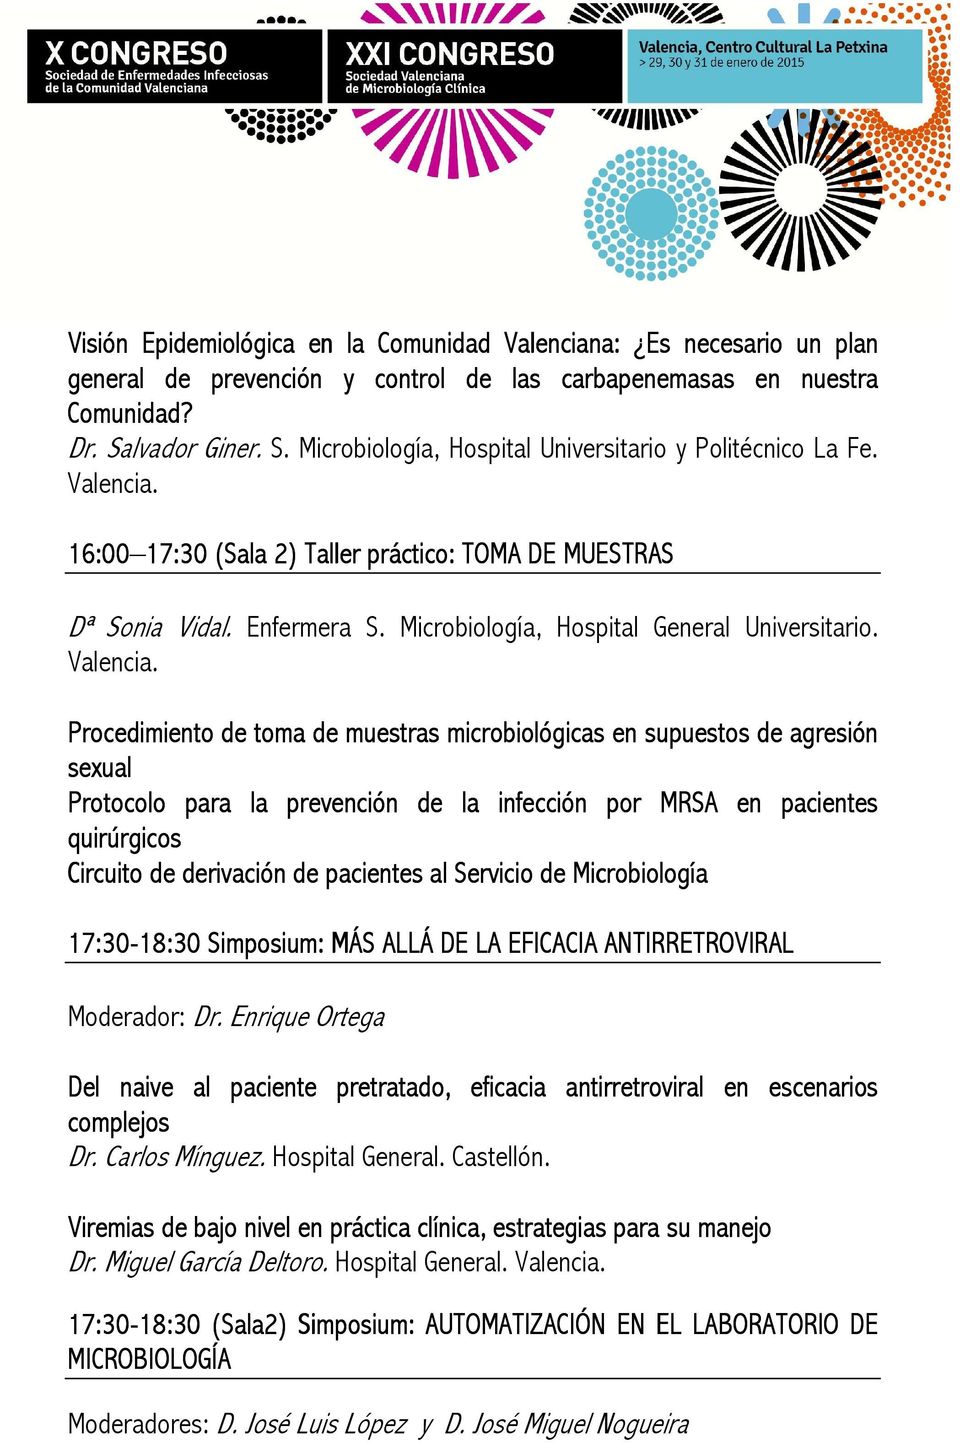 Microbiología, Hospital General Universitario. Valencia.